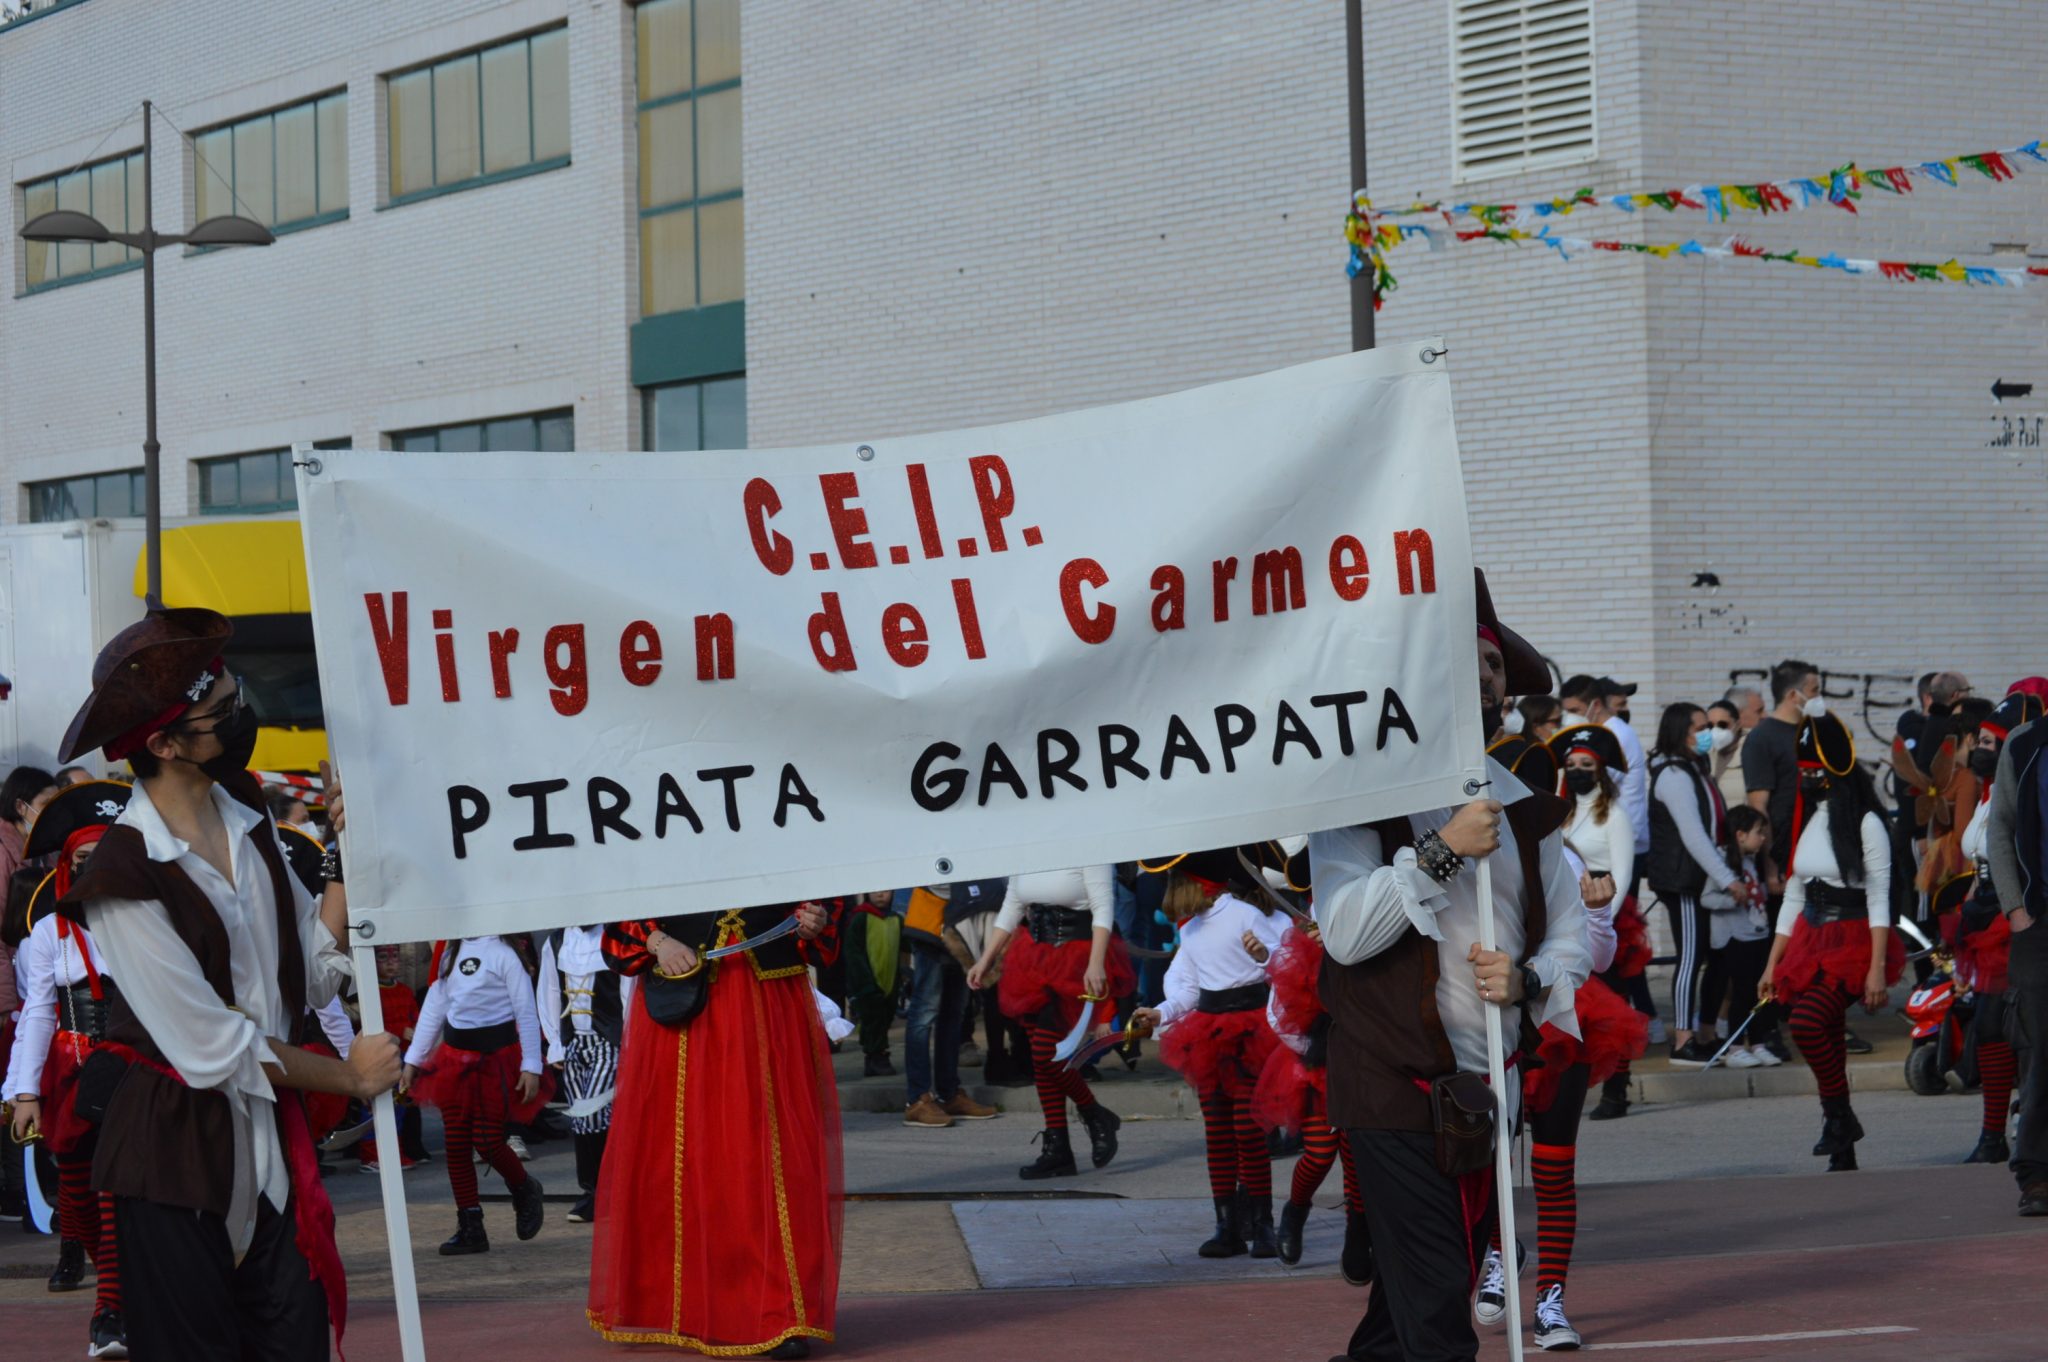 Carnaval Infantil de Ponferrada, los más peques inundan la calle de color y buen humor 76